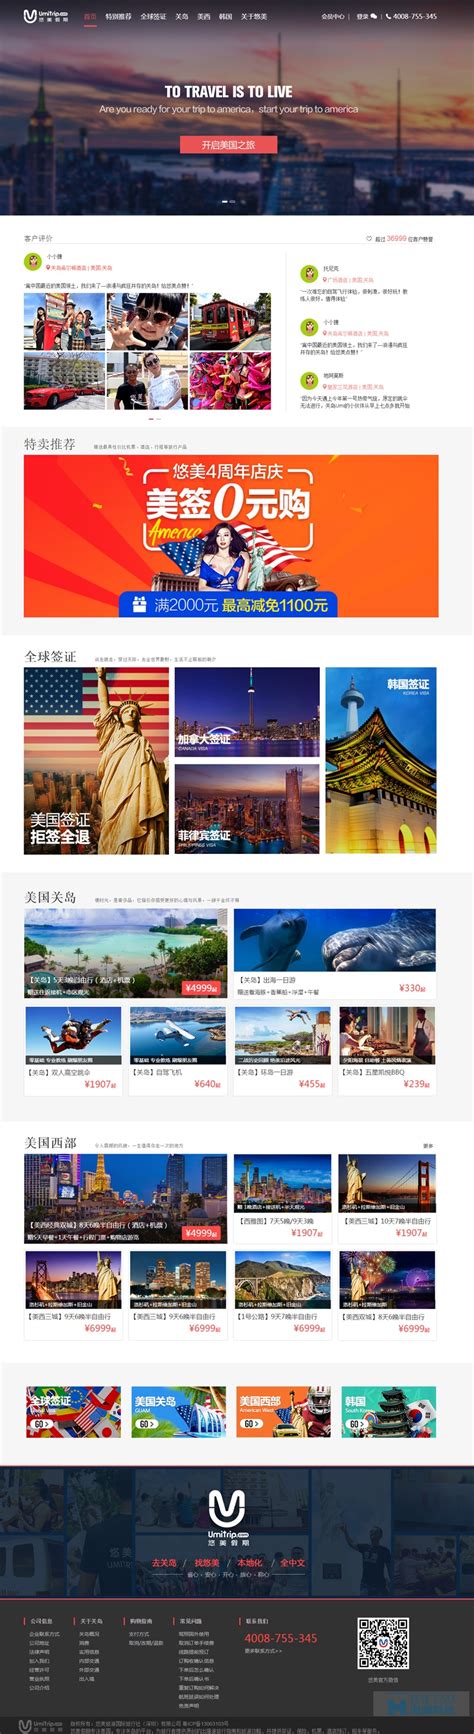 悠美旅行网旅游网站设计,旅游网站建设方案,上海旅游网站开发-海淘科技